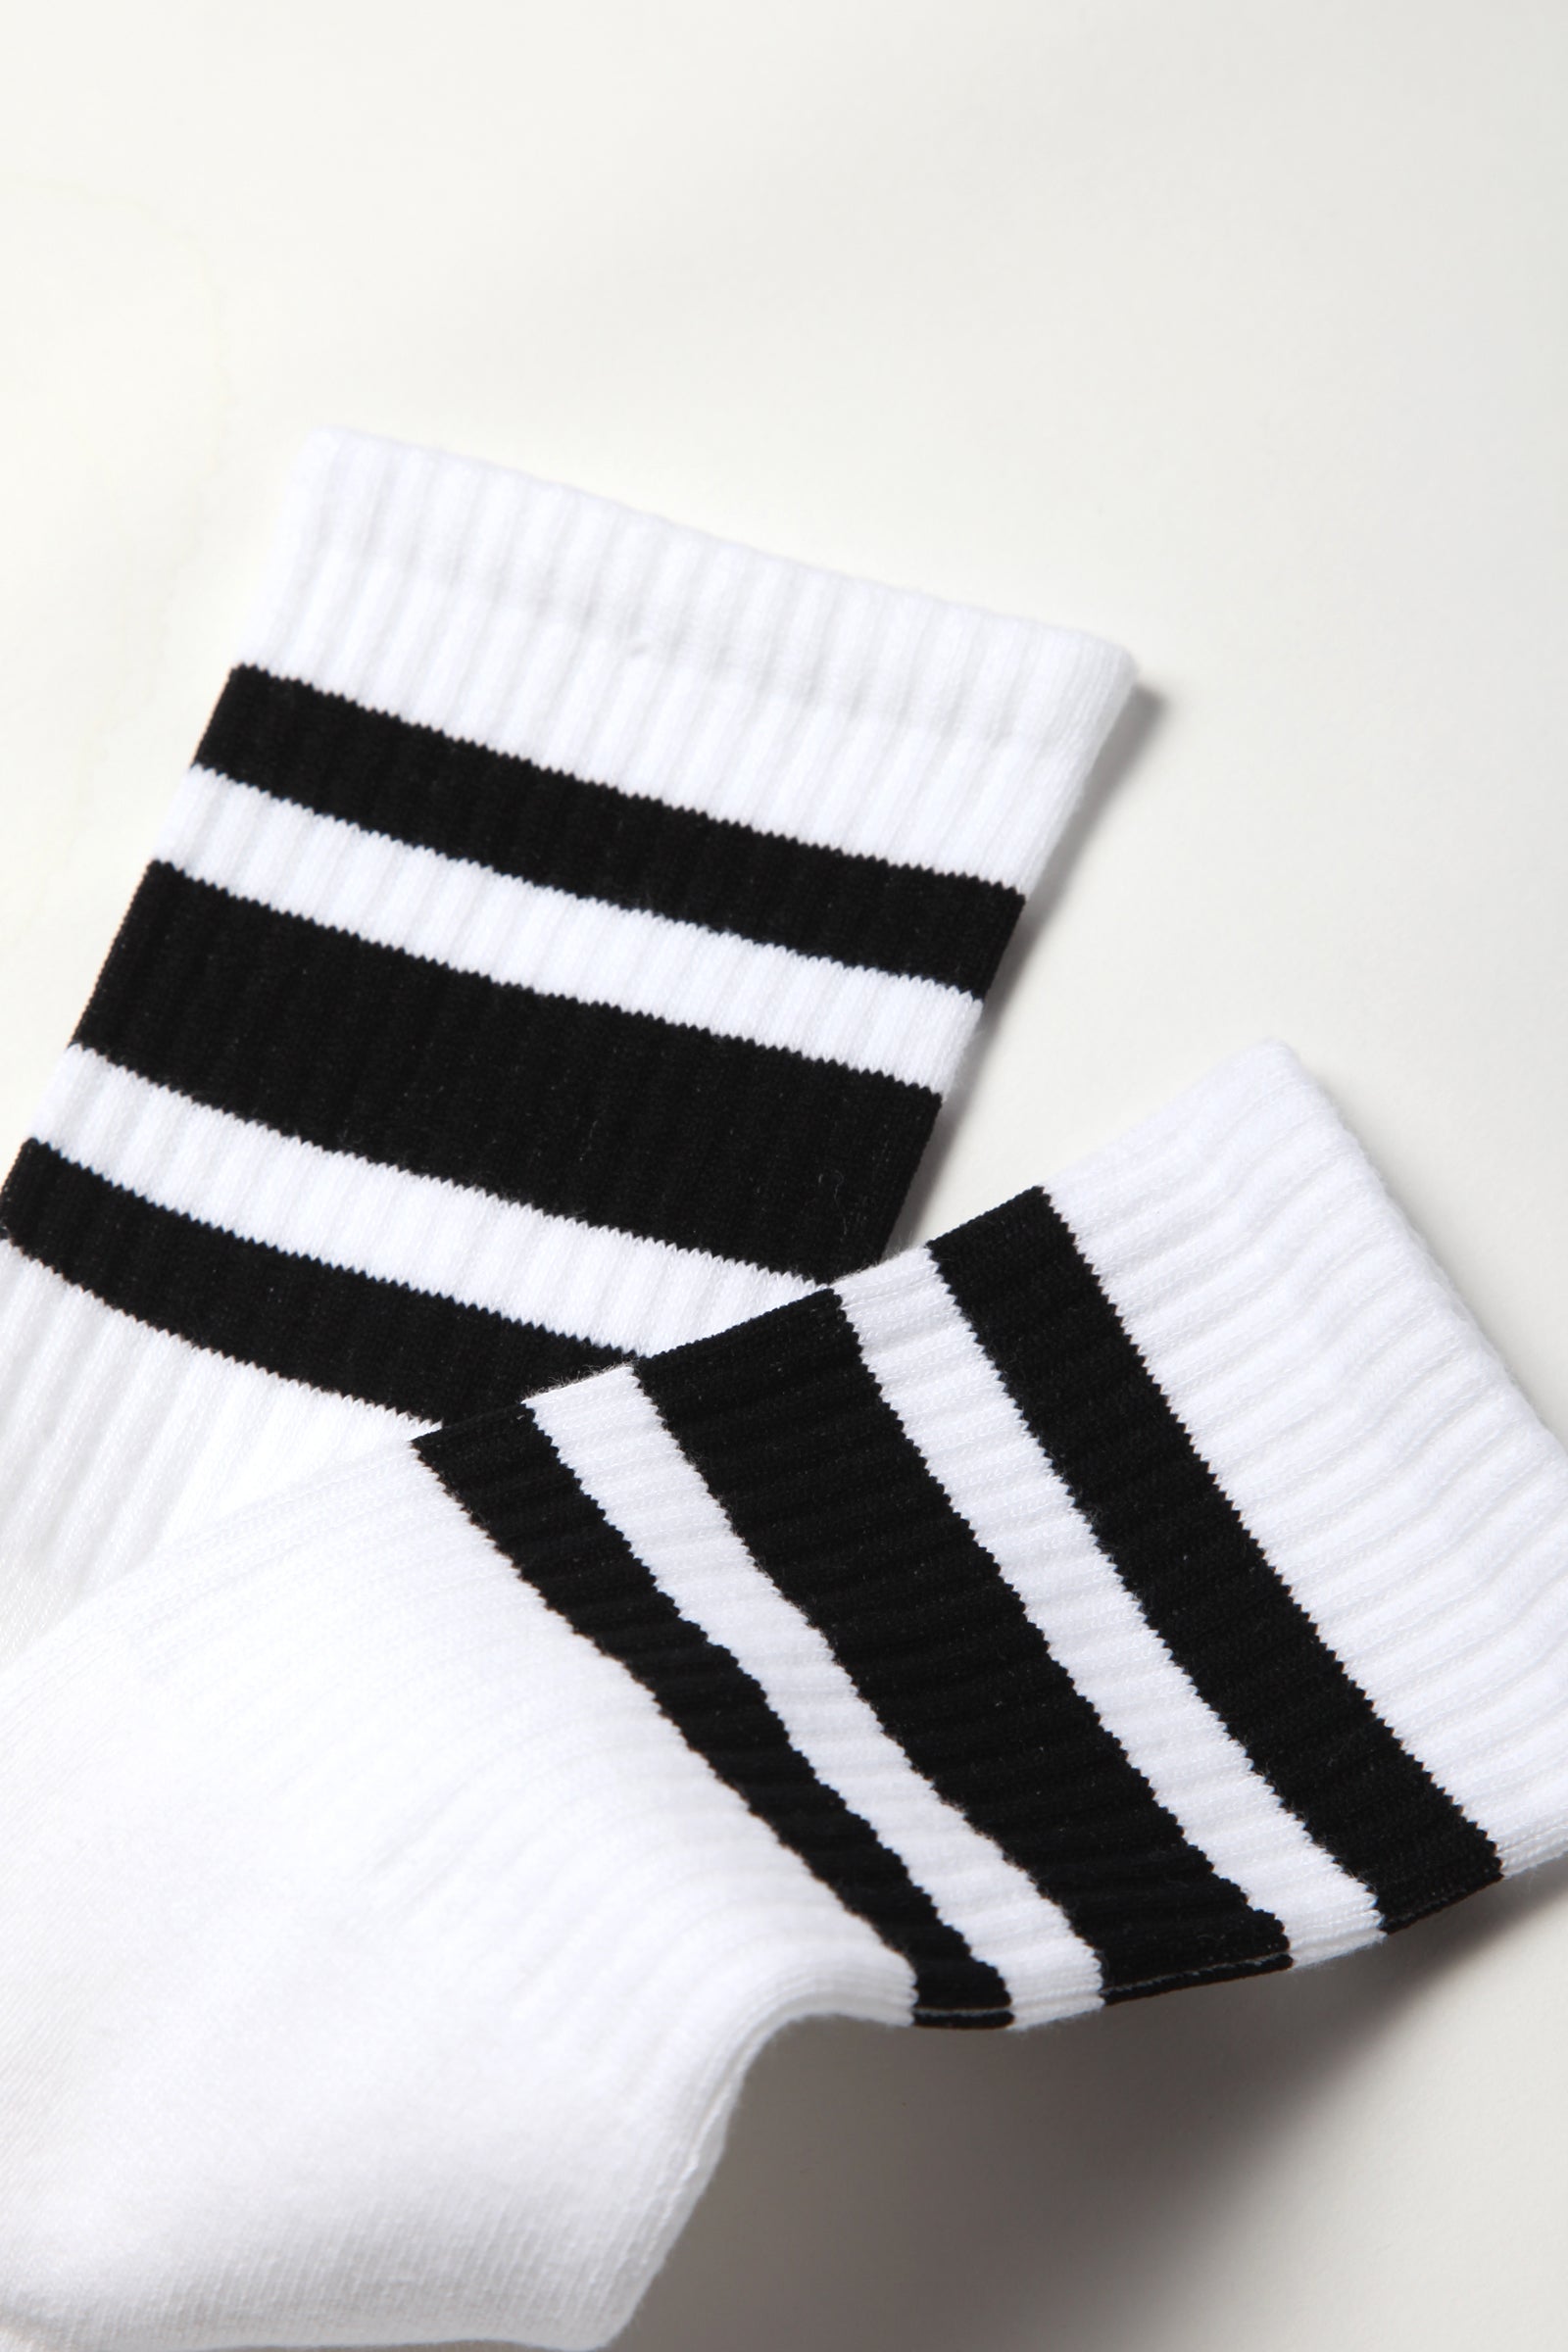 Socco - Striped Crew Socks - Black/White